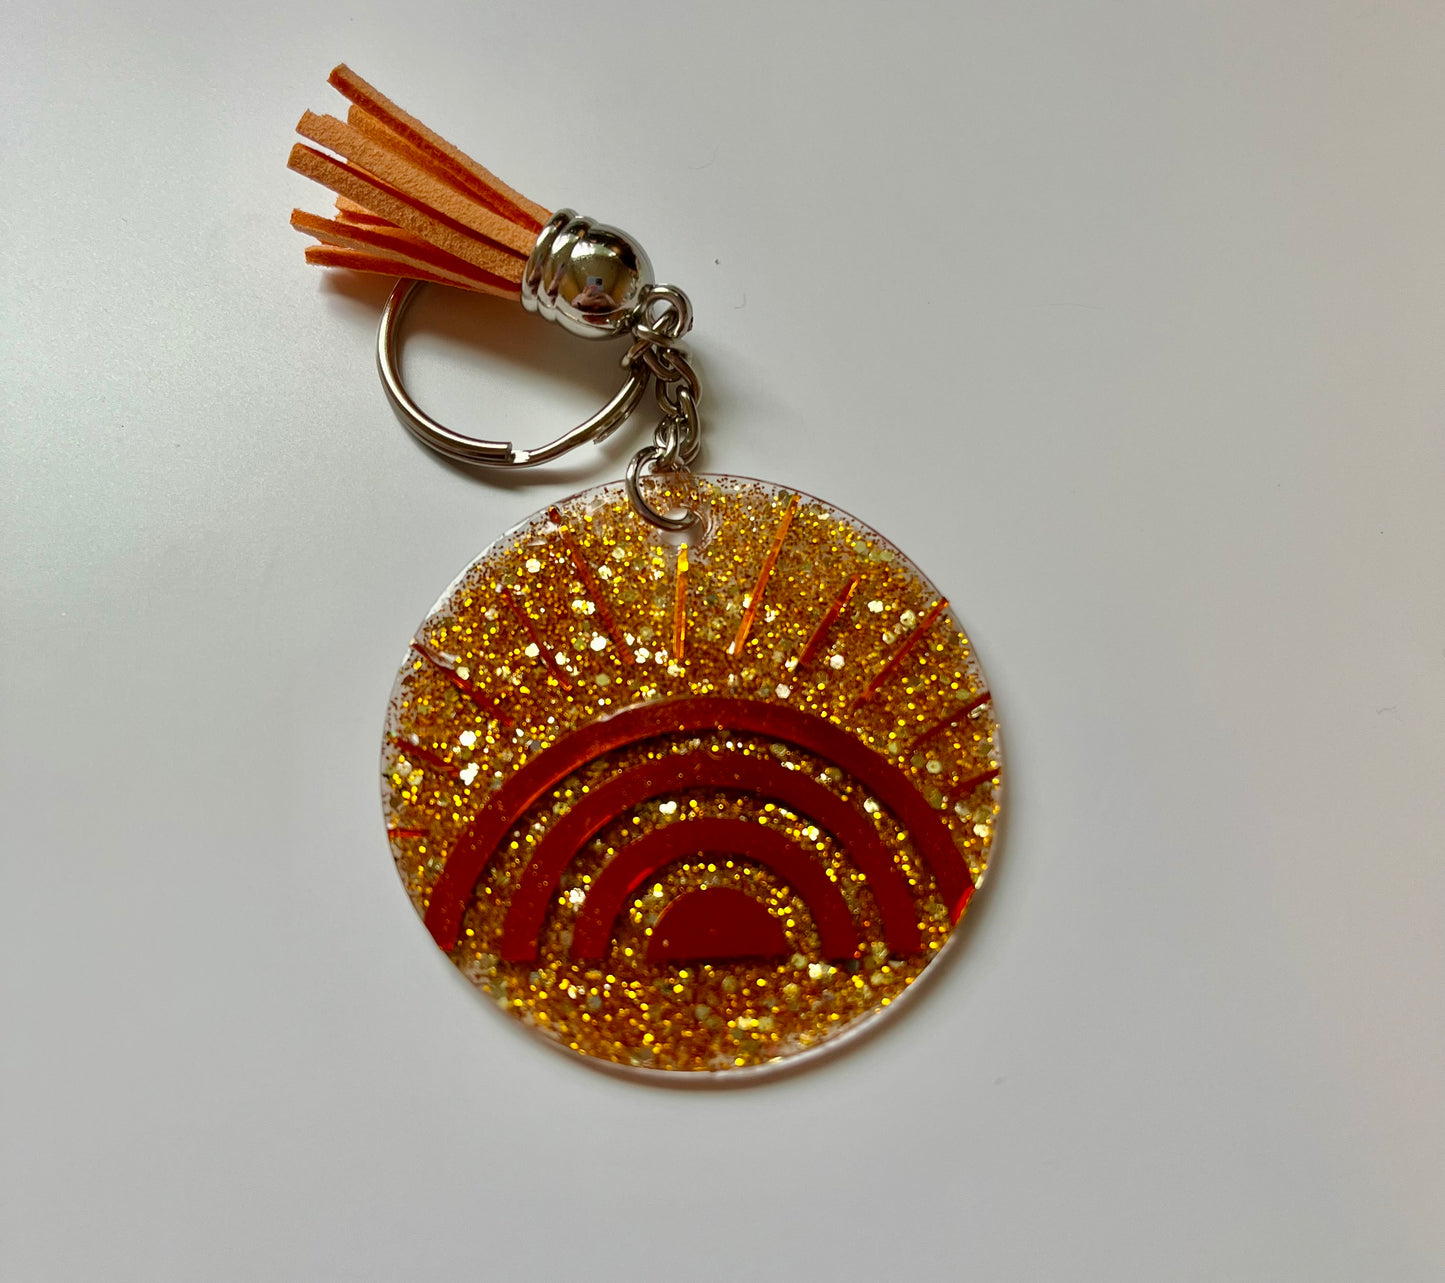 Acrylic Keychain - Golden Hour